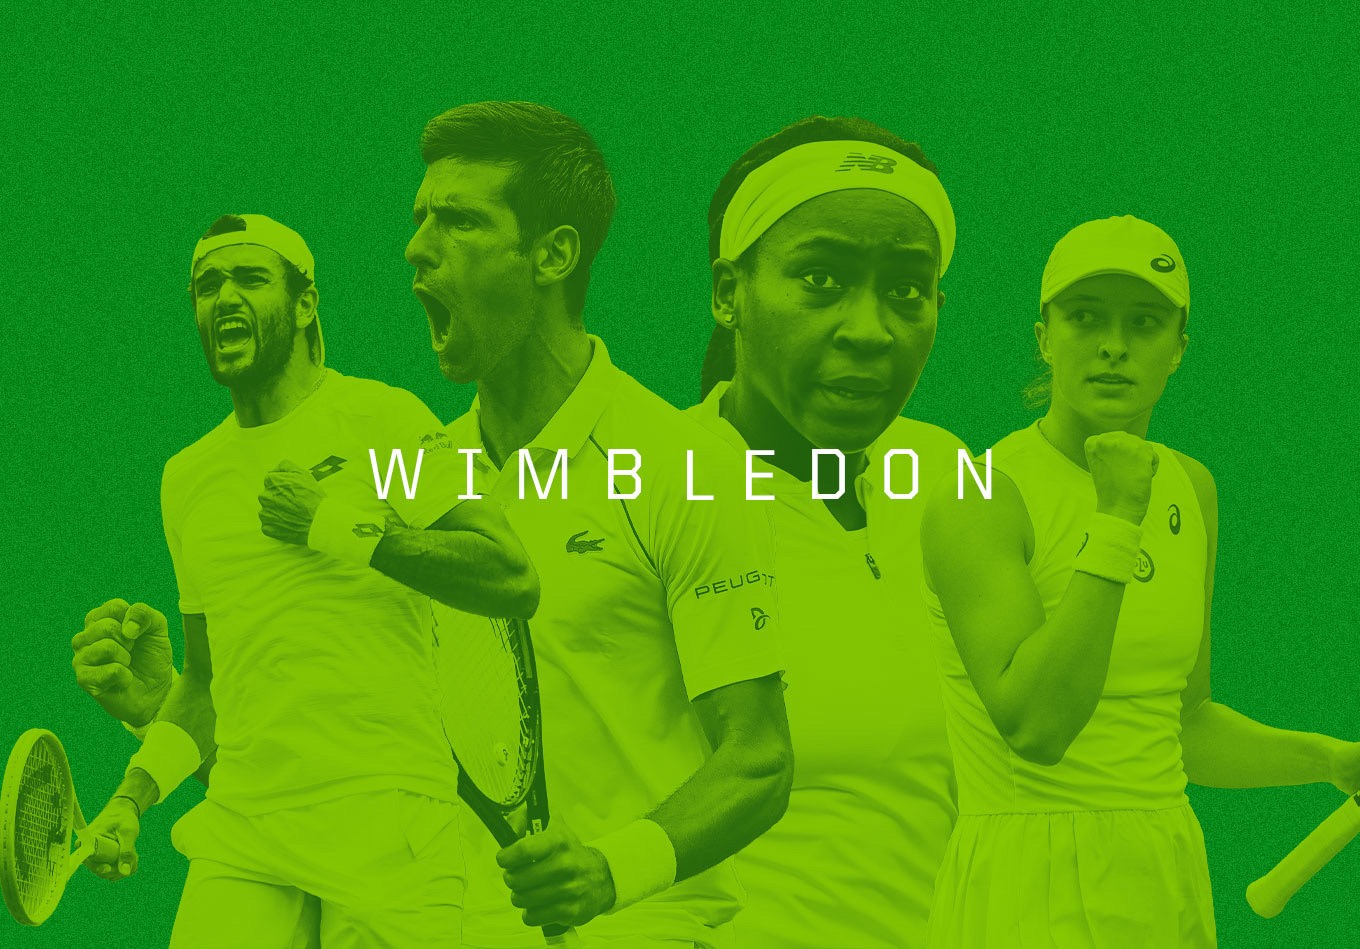 London Calling: Five Data Stories to Follow at Wimbledon